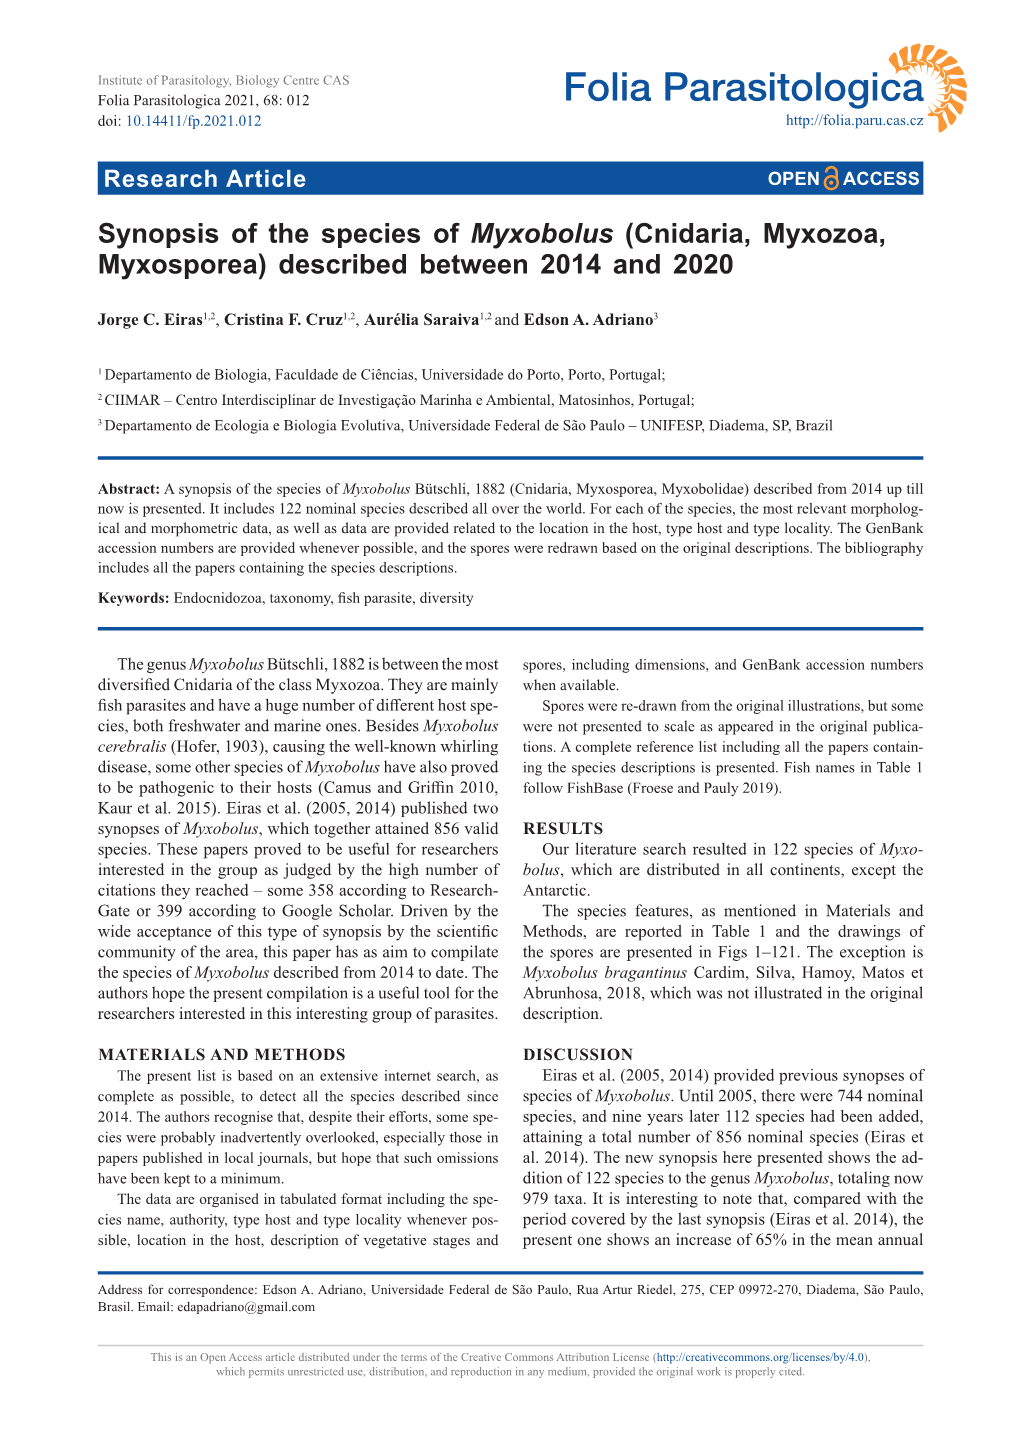 Synopsis of the Species of Myxobolus (Cnidaria, Myxozoa, Myxosporea) Described Between 2014 and 2020